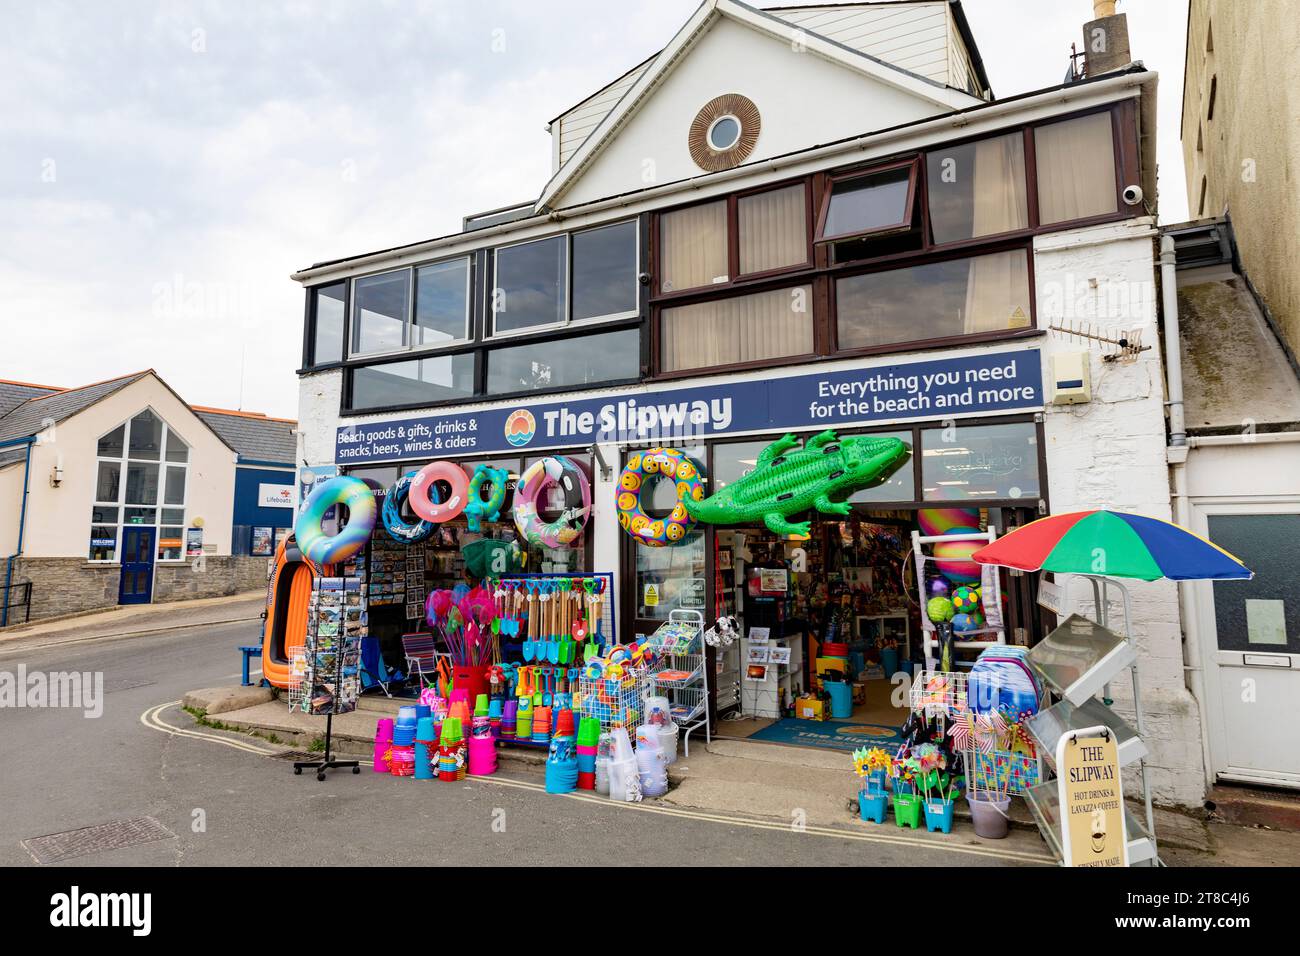 Magasin traditionnel de marchandises de plage de Lyme Regis Dorset sur la promenade vendant des seaux et des bêches, jouets gonflables de plage, Angleterre, Royaume-Uni, 2023 Banque D'Images